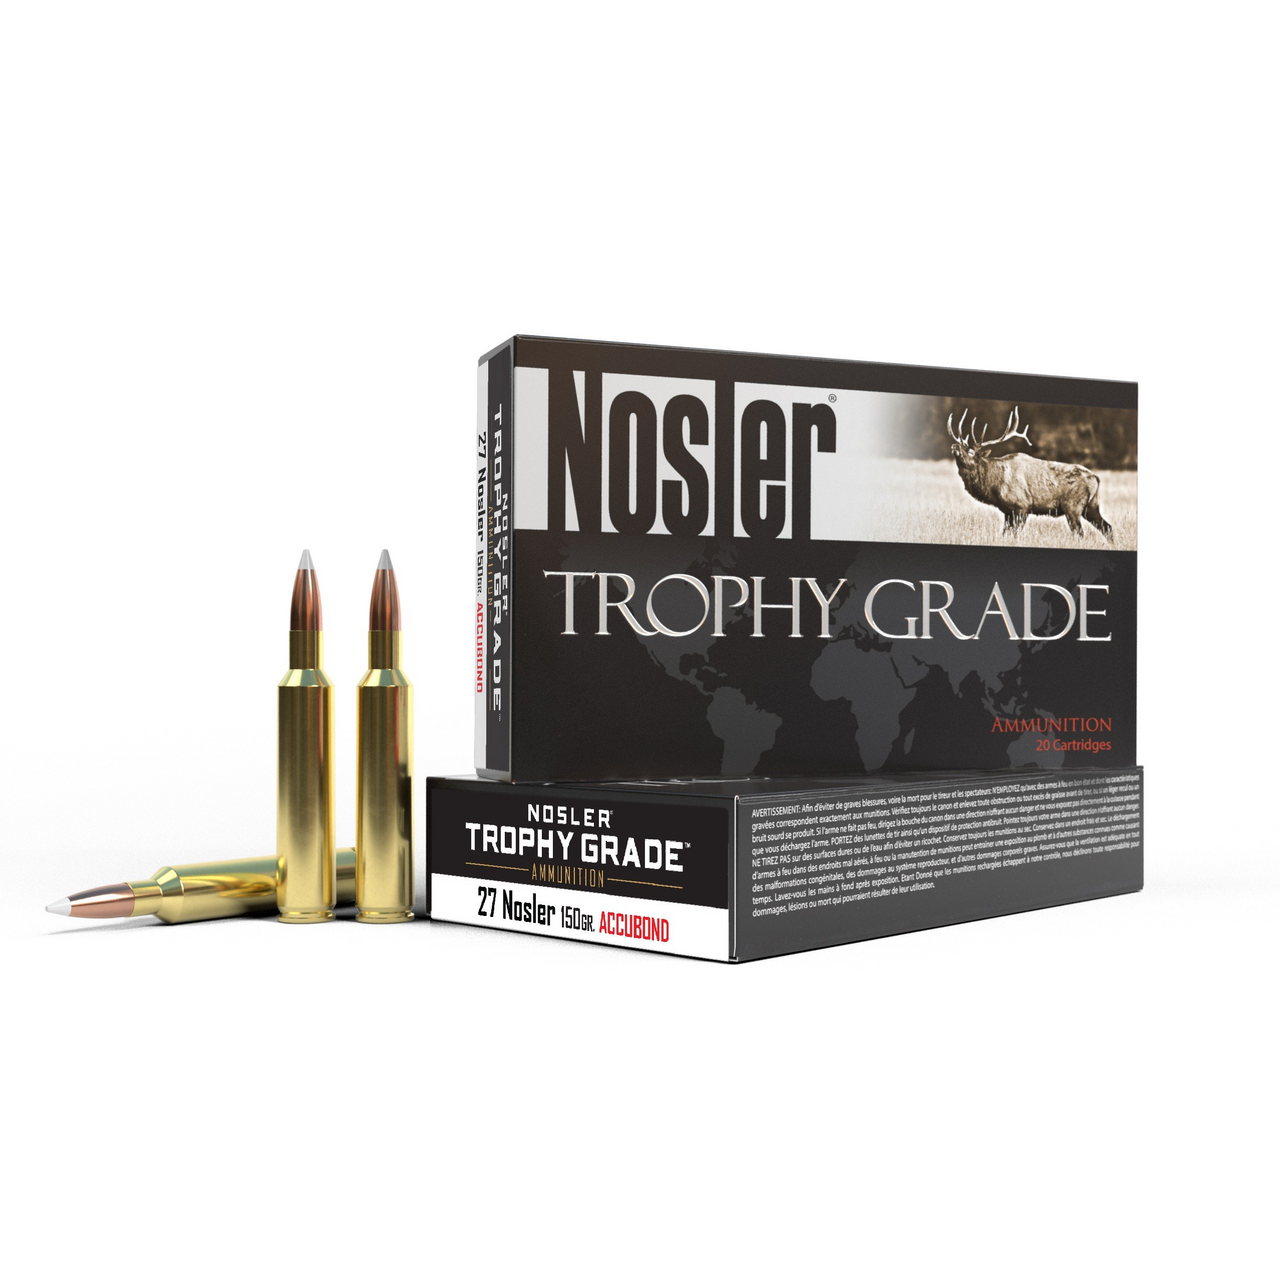 Nosler Trophy Grade Ammo 27 Nosler, 150gr Accubond, 20 Rnds